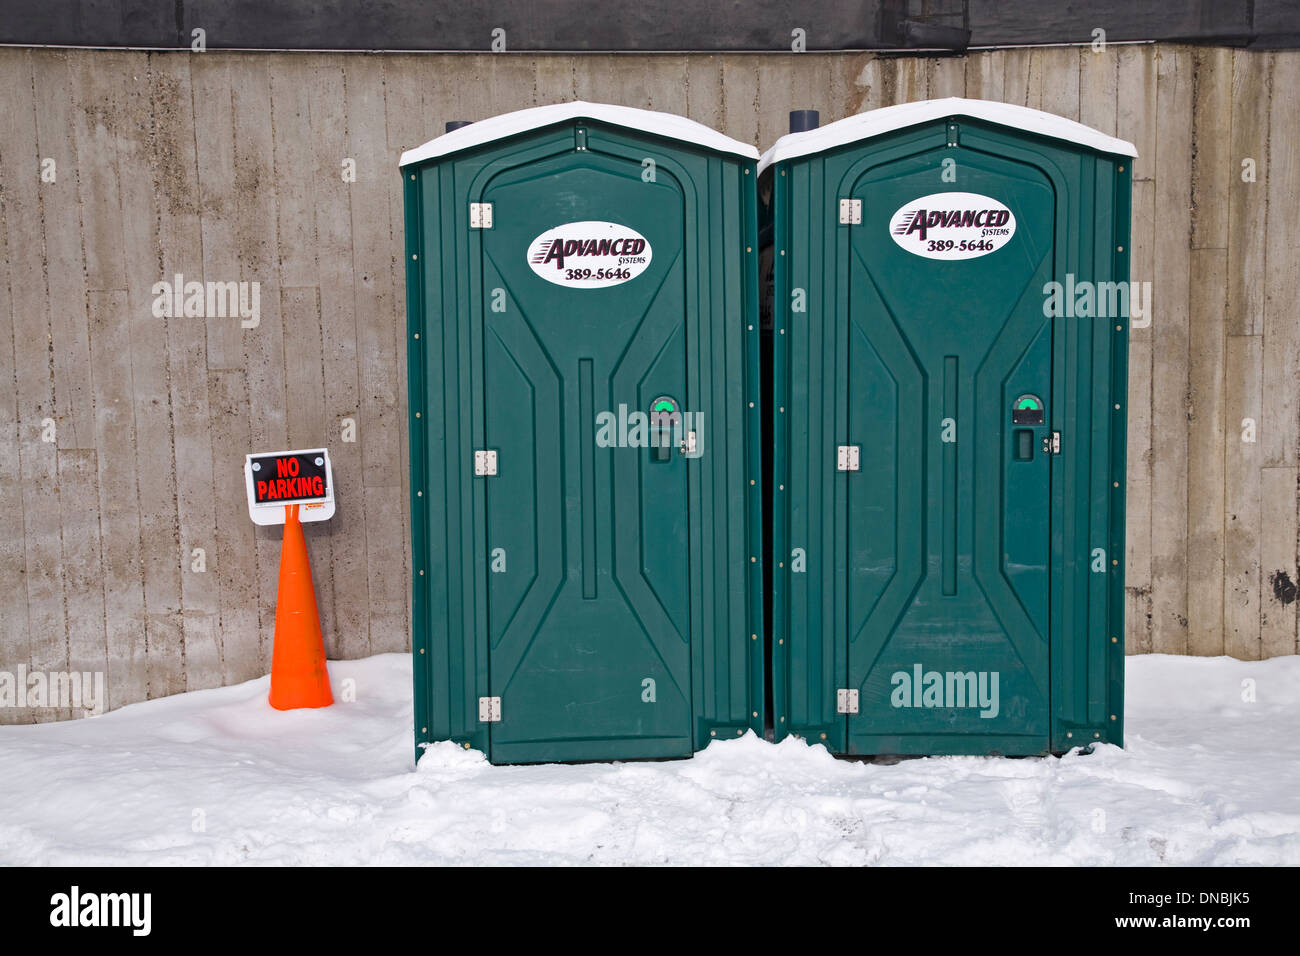 Toilette chimica immagini e fotografie stock ad alta risoluzione - Alamy